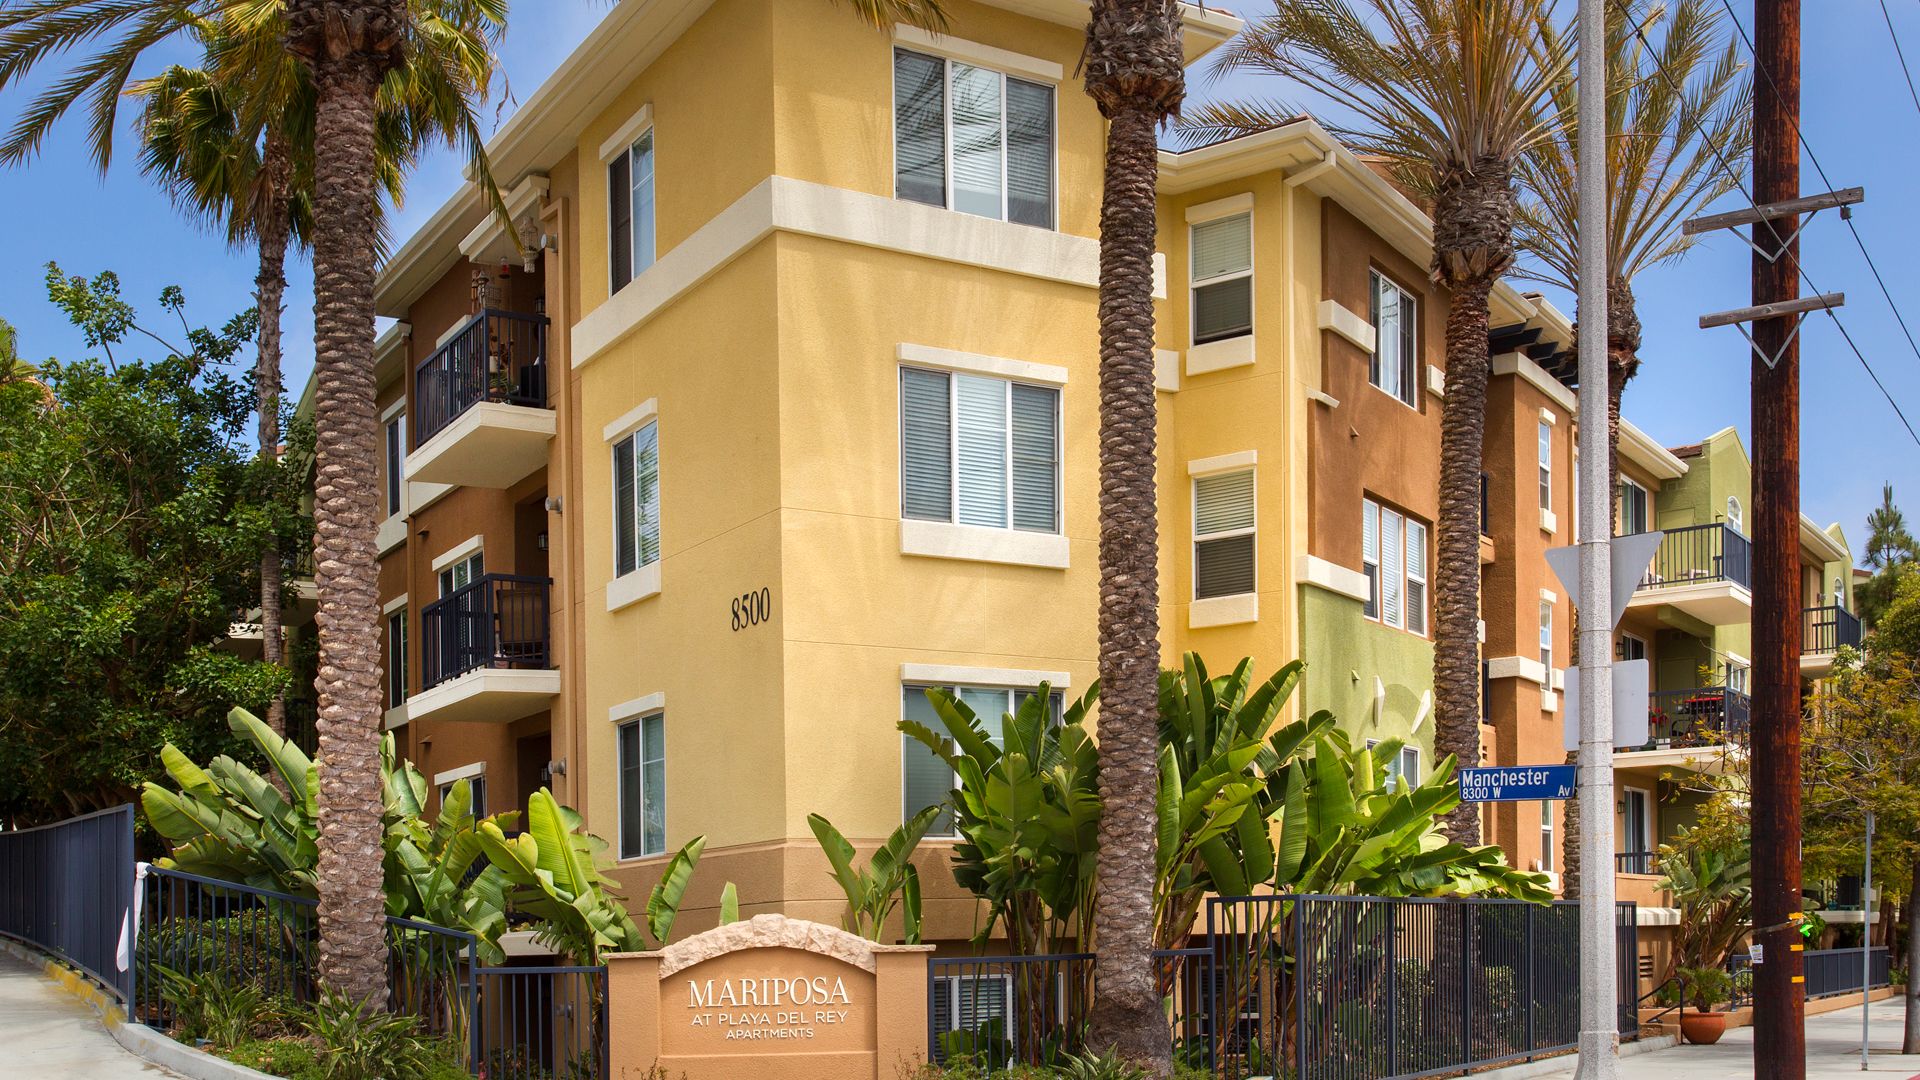 Mariposa at Playa Del Rey Apartments - Playa del Rey - 8700 Pershing Dr